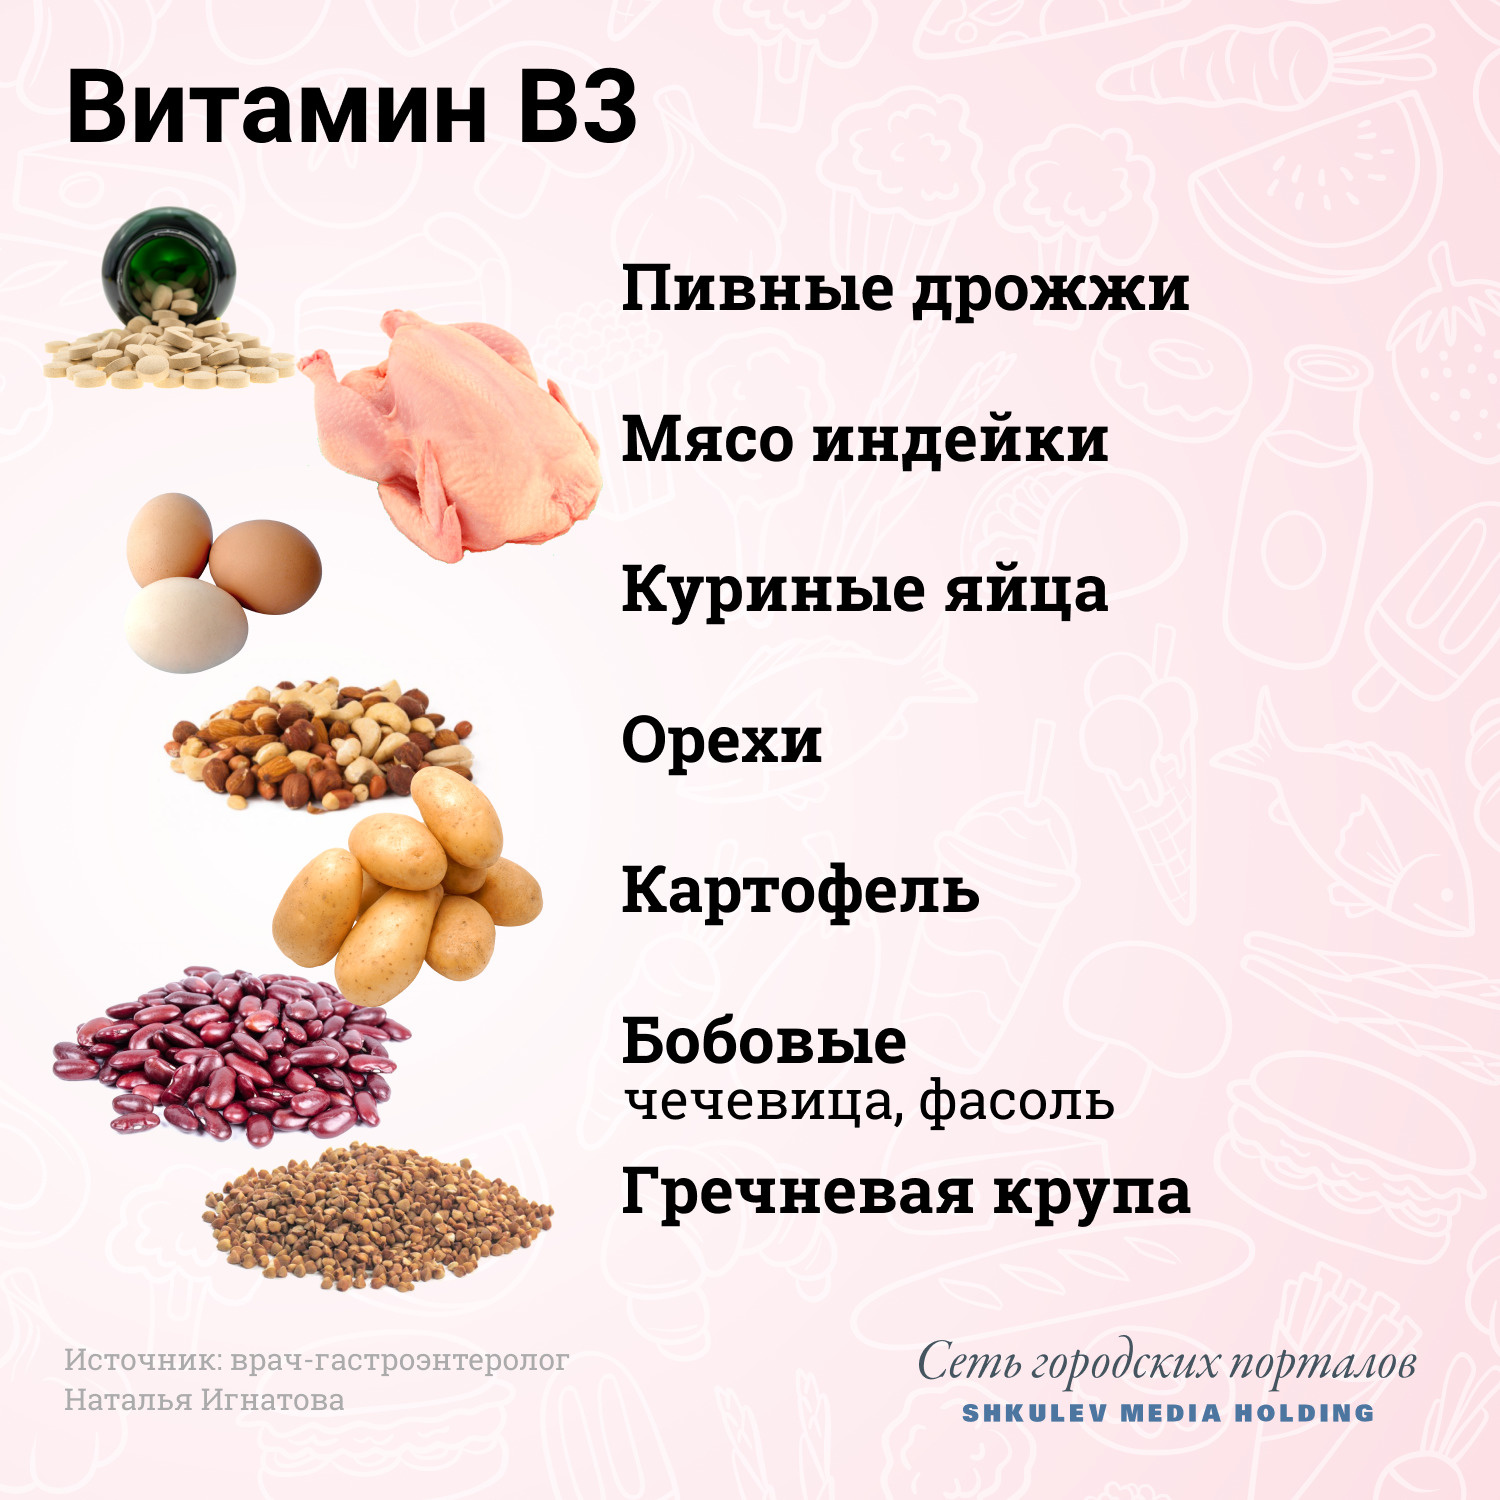 Продукты с высоким содержанием витамина В3